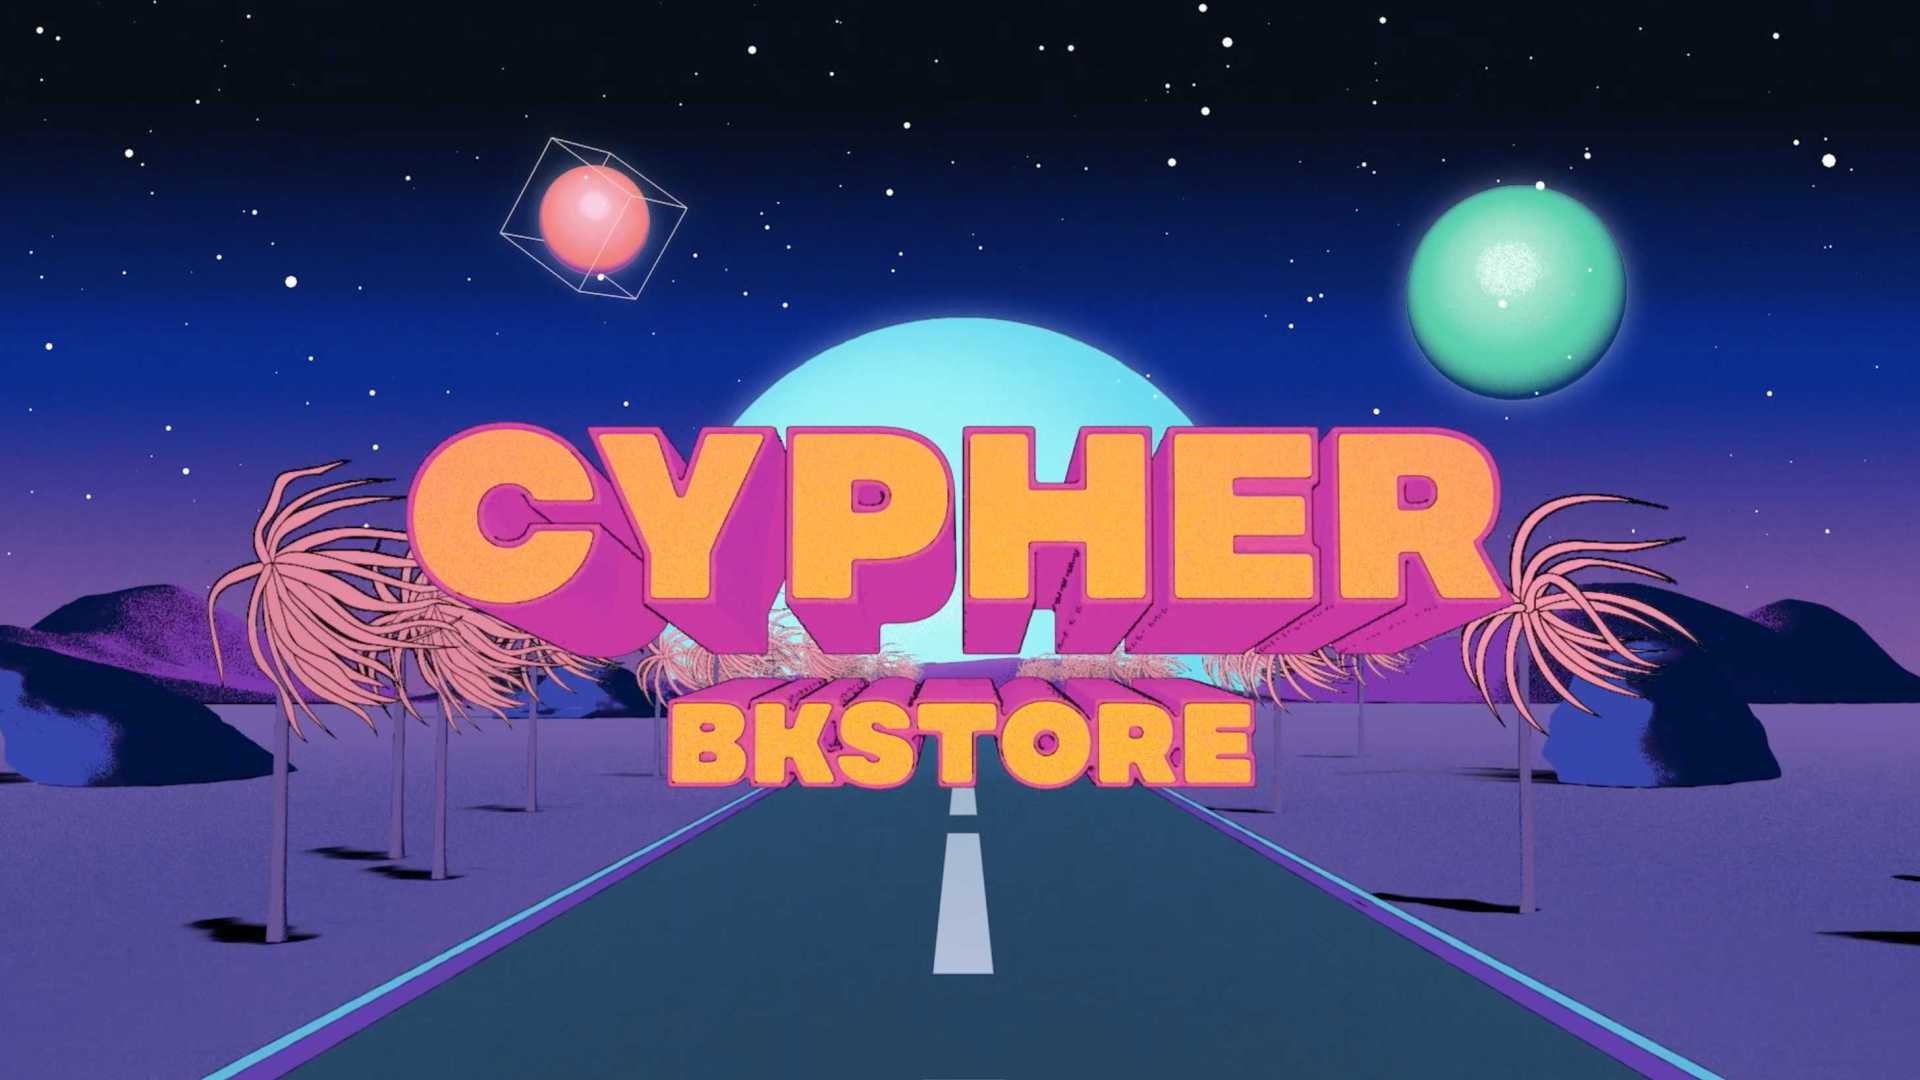 BKstore Cypher MV